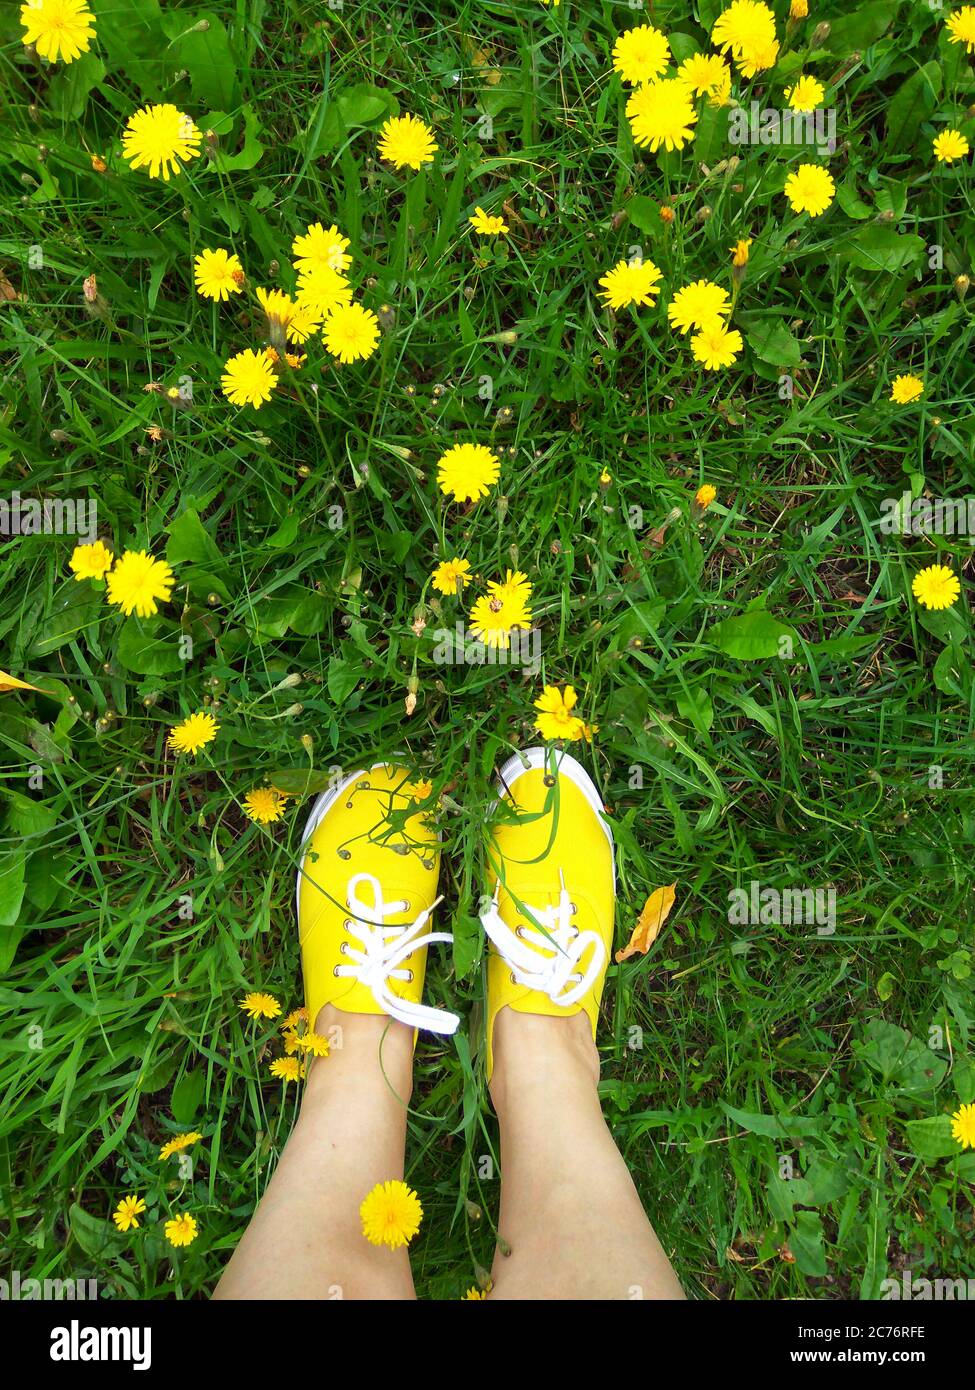 Sneakers gialli in erba con fiori gialli, la foto è stata scattata al telefono quando sono andato per una passeggiata, top-down delle gambe. Foto Stock